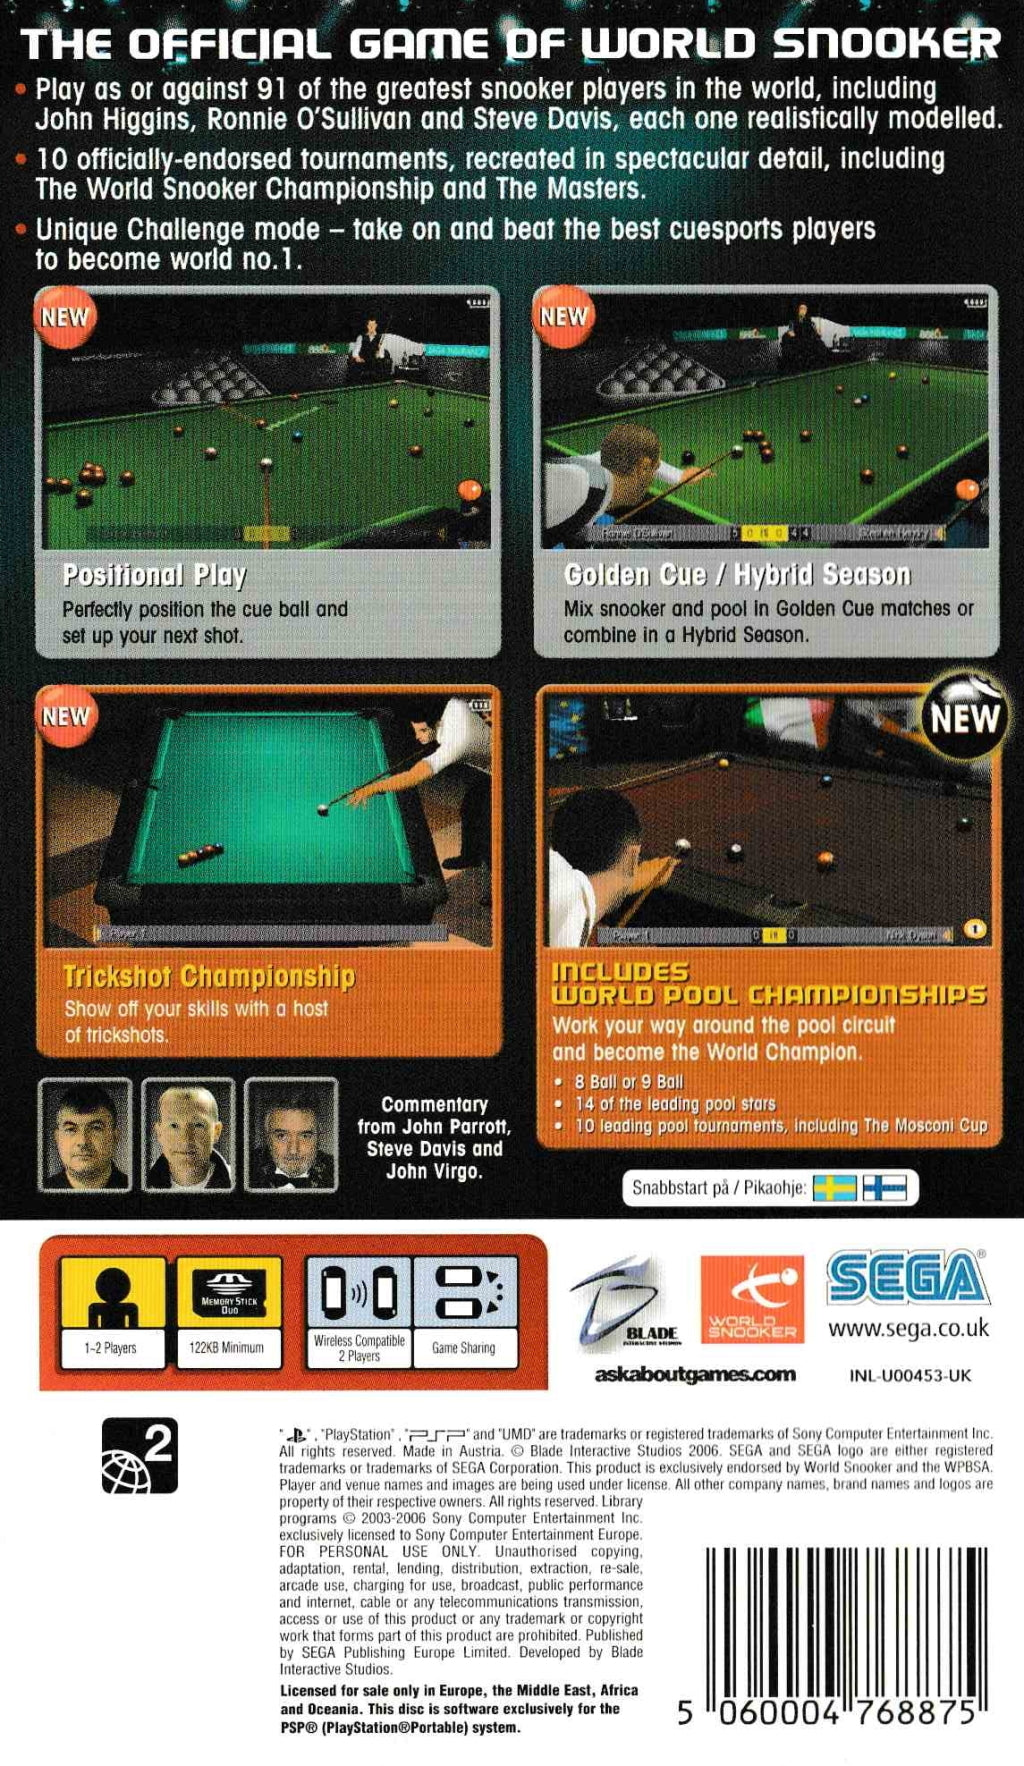 World Snooker Challenge 2007 - Sony PSP [Pre-Owned] (European Import) Video Games Sega   